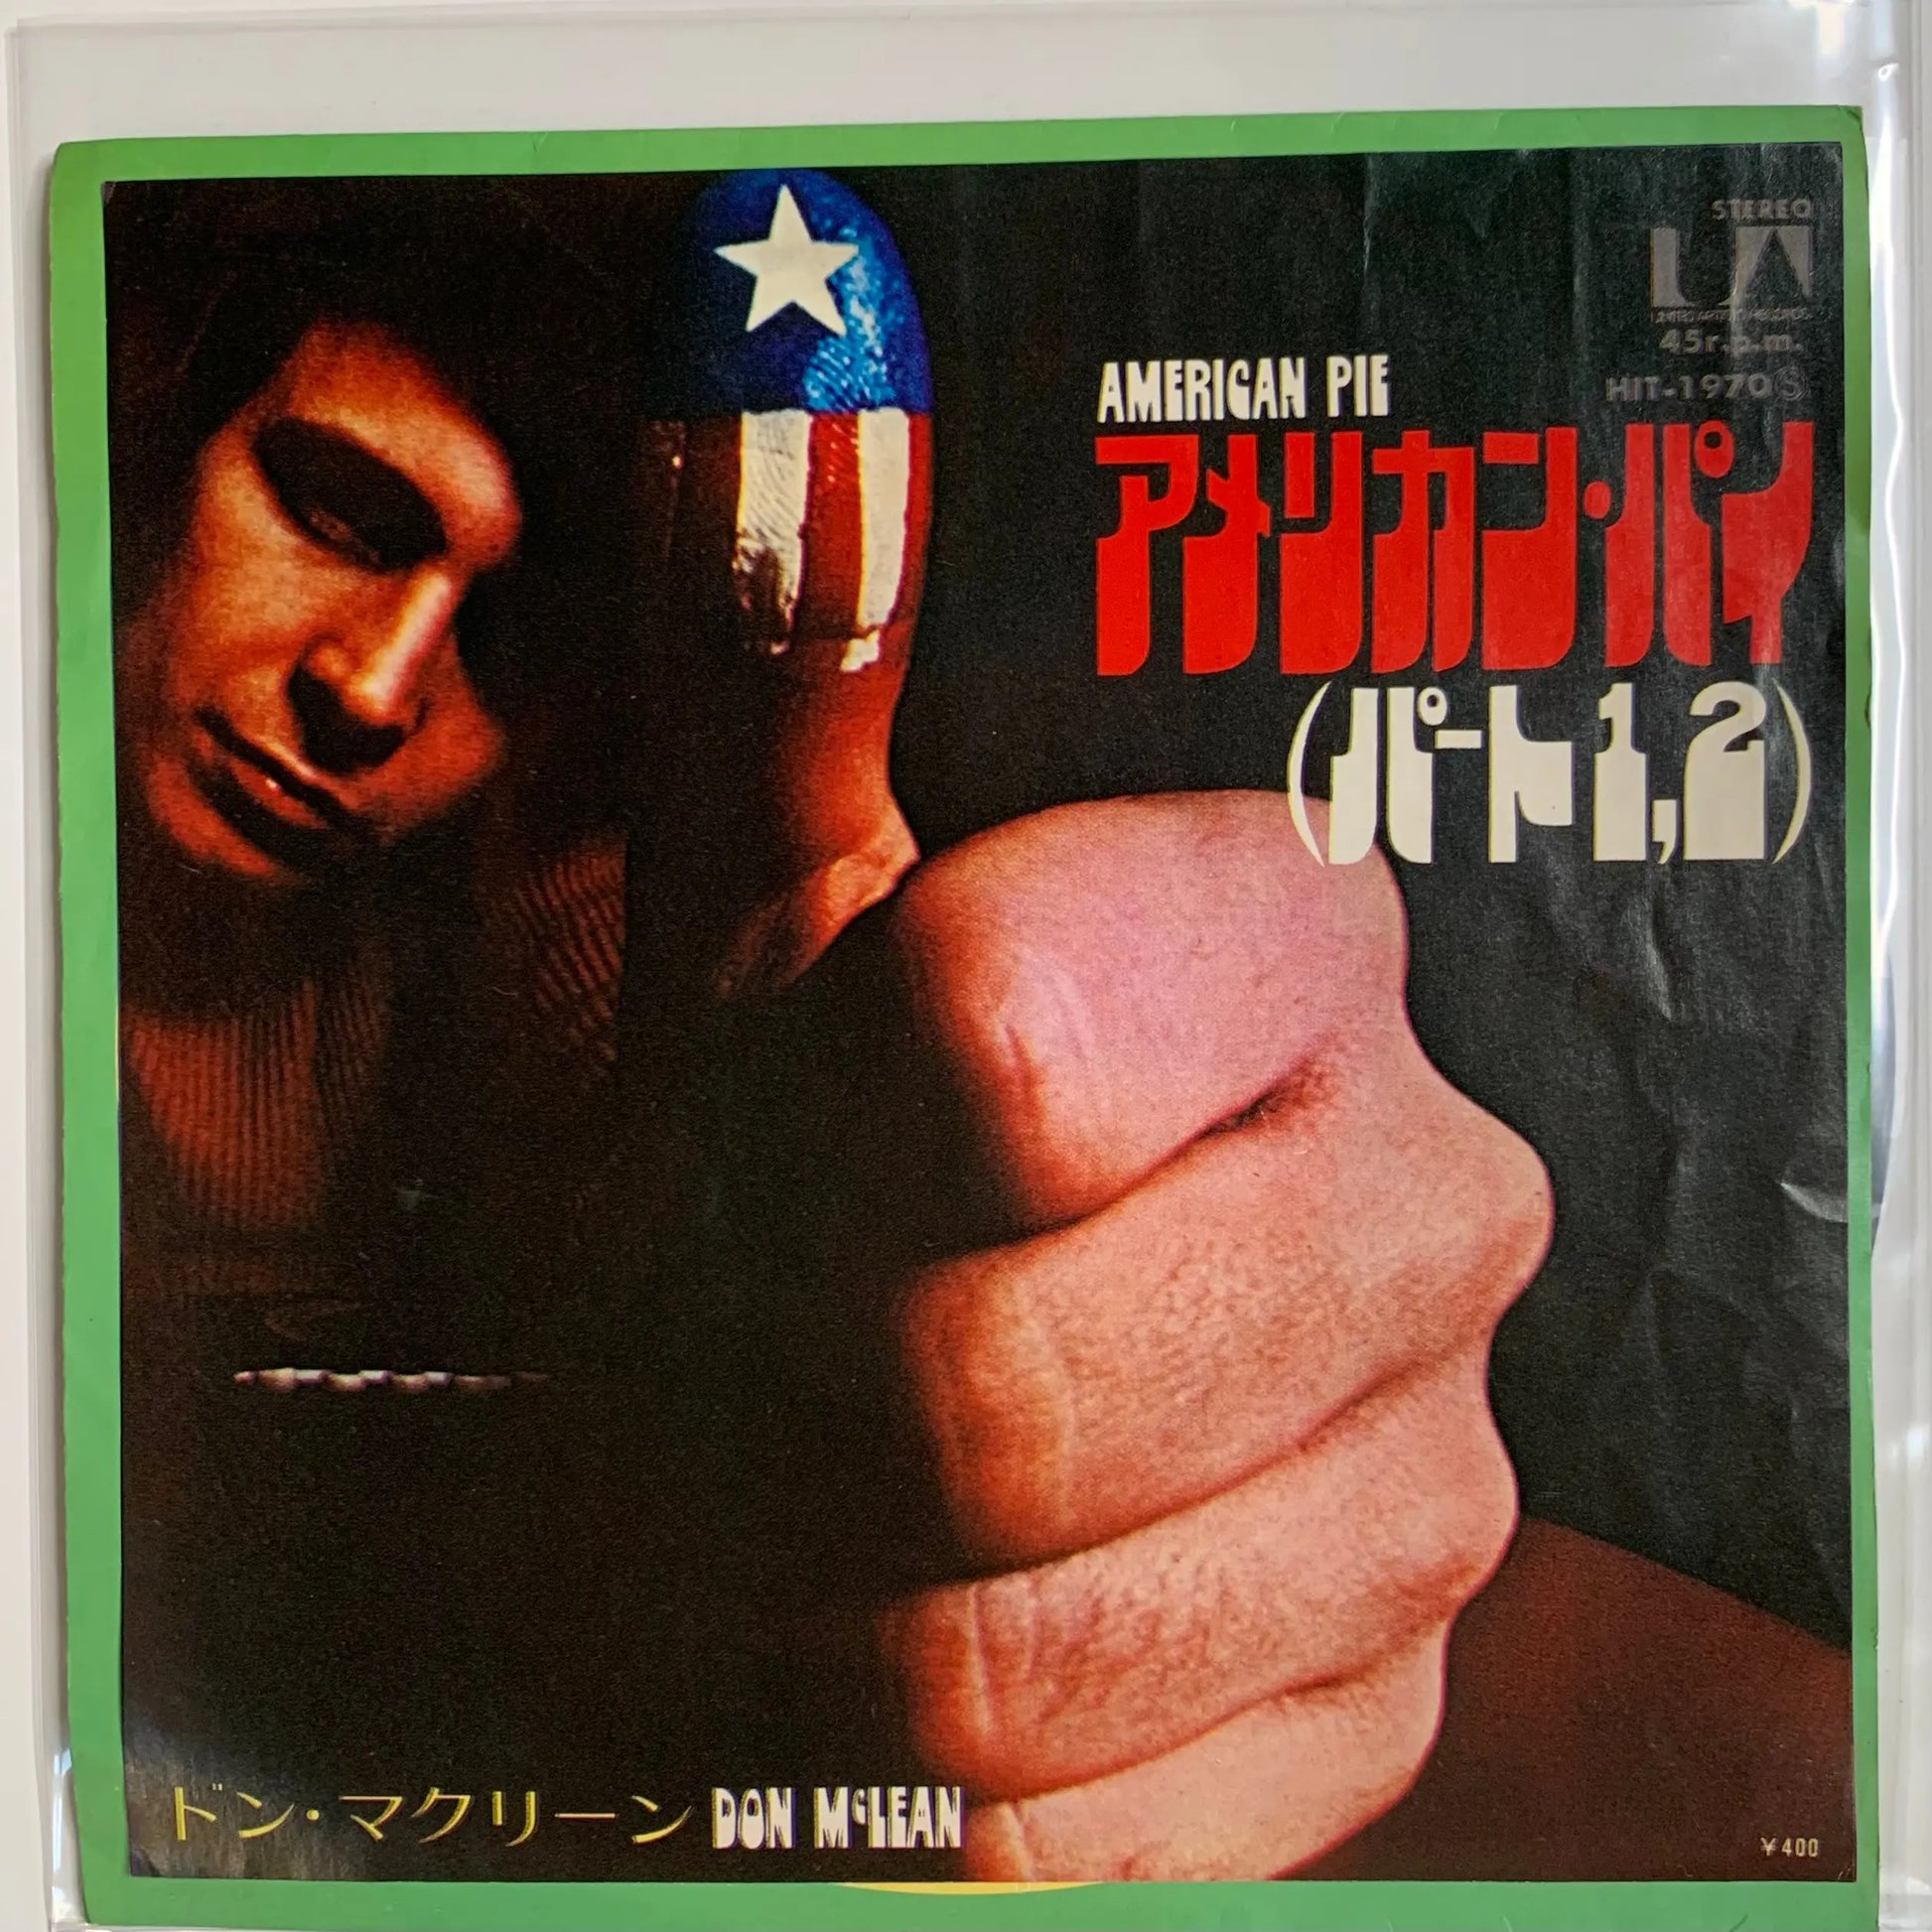 Don McLean - American Pie [Japanese 45 7" Single Vinyl]